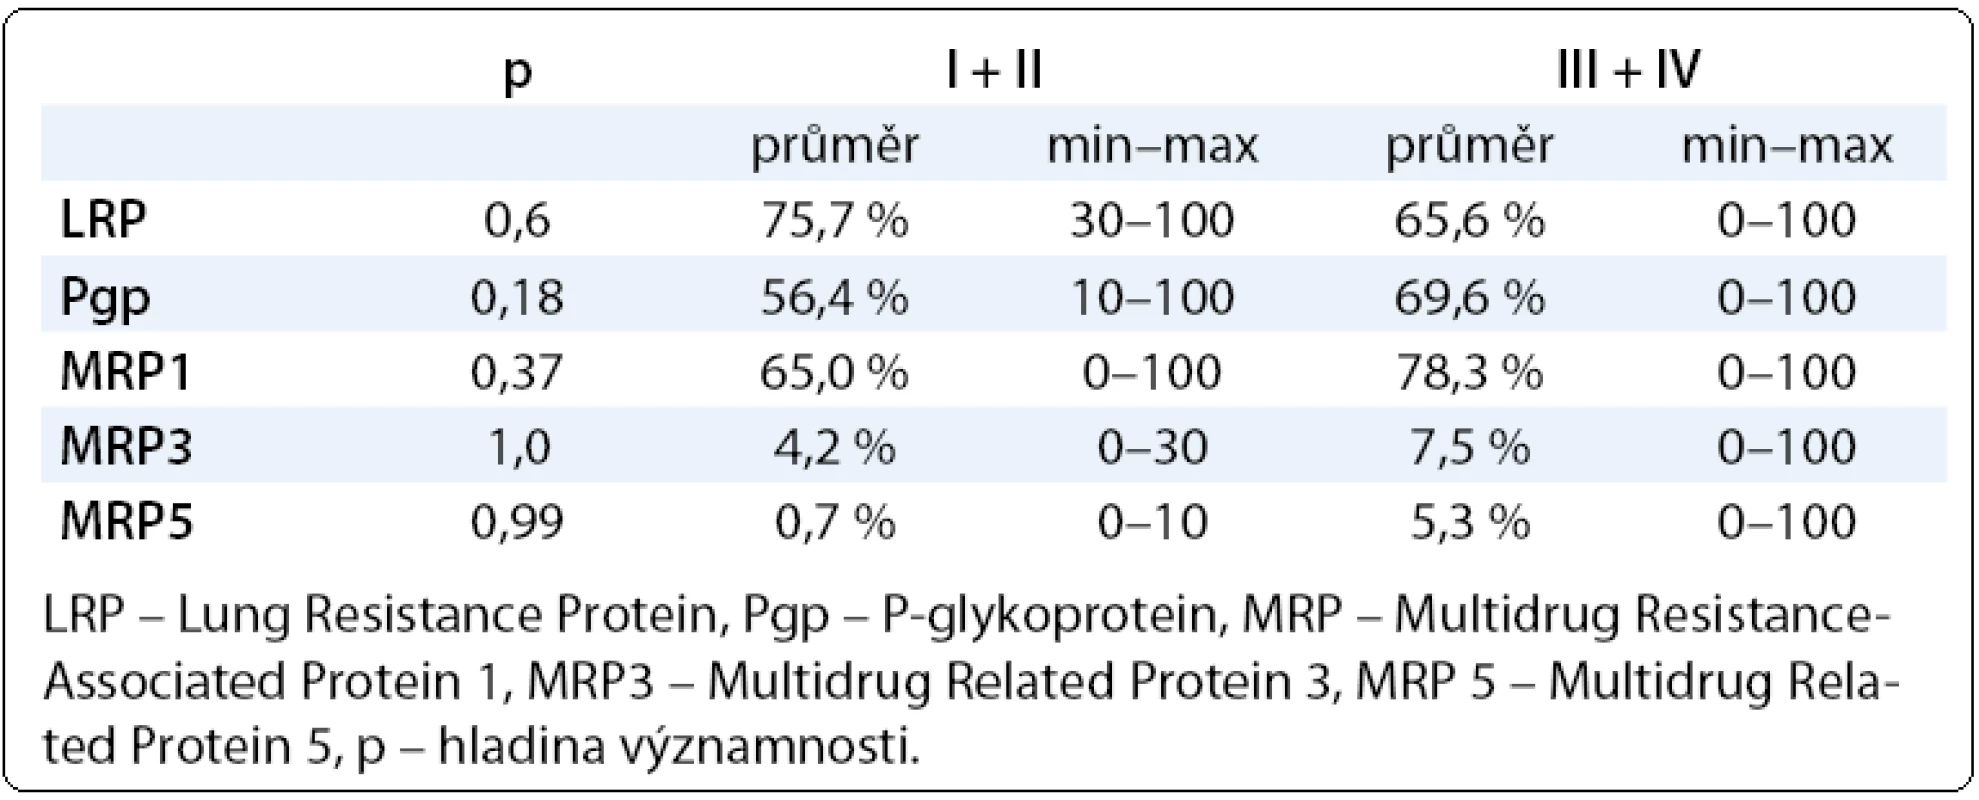 Hodnoty proteinů rezistence LRP, Pgp, MRP1, MRP3, MRP5 v závislosti na stadiu onemocnění (I + II) a (II + IV).